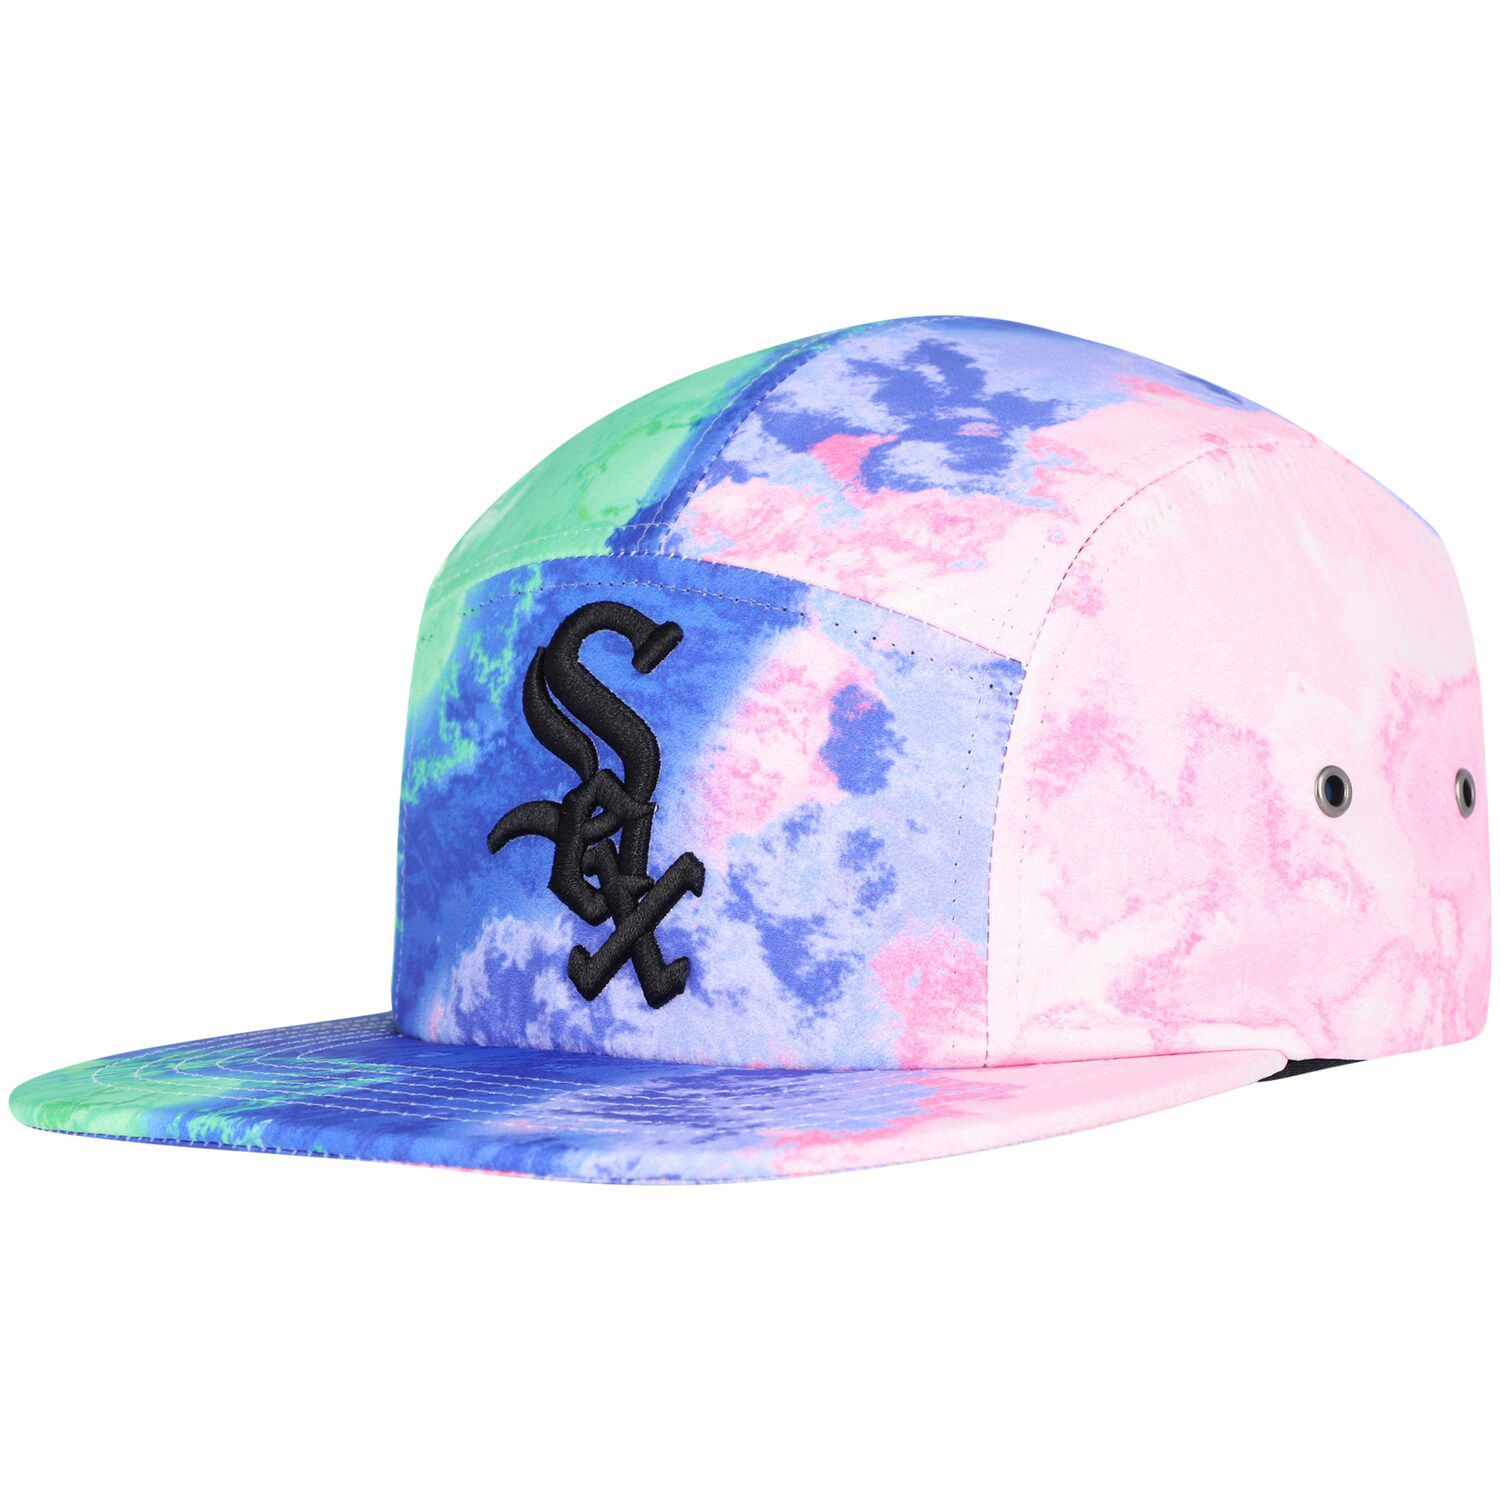 Image for Unbranded Men's Pro Standard Chicago White Sox Dip-Dye Adjustable Hat at Kohl's.